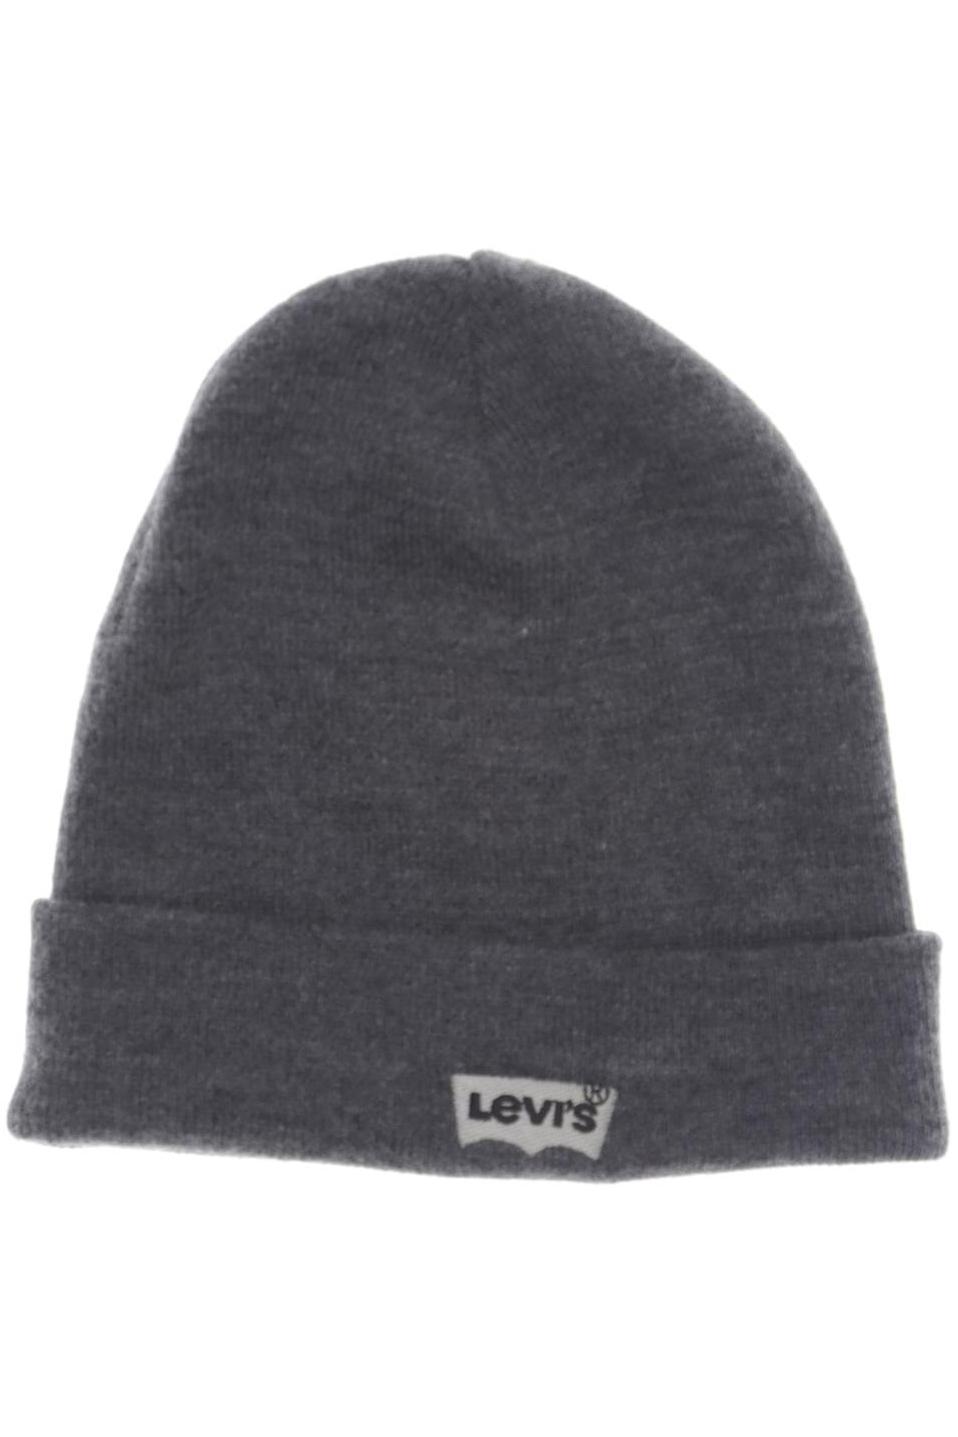 Levis Damen Hut/Mütze, grau von Levis